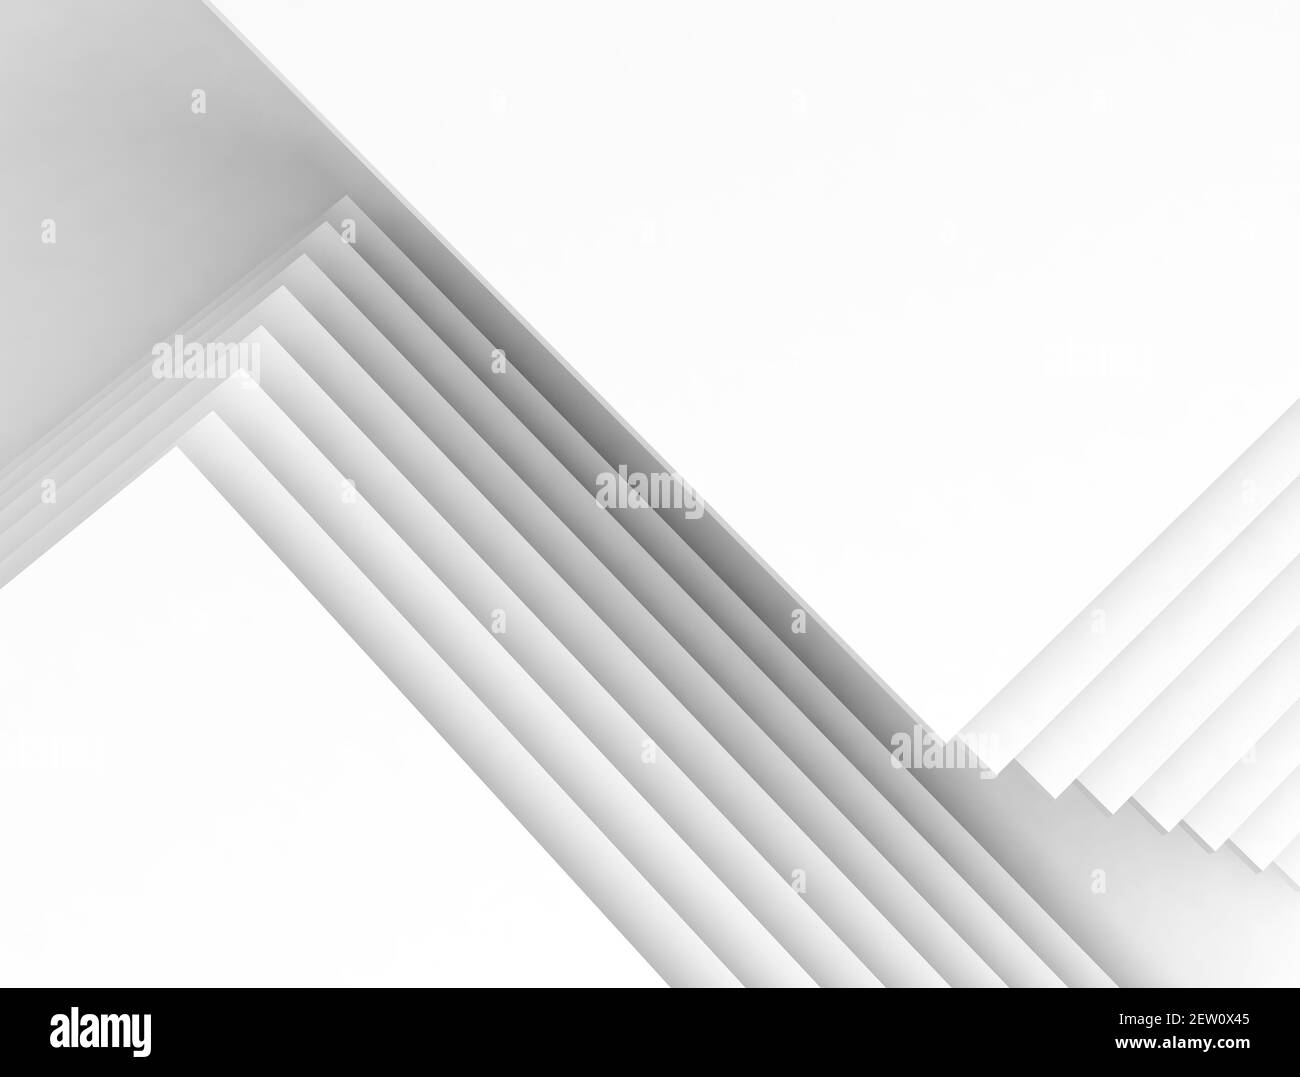 Arrière-plan blanc abstrait, motif géométrique de papier chevauchant les carrés et les ombres. illustration de rendu 3d Banque D'Images